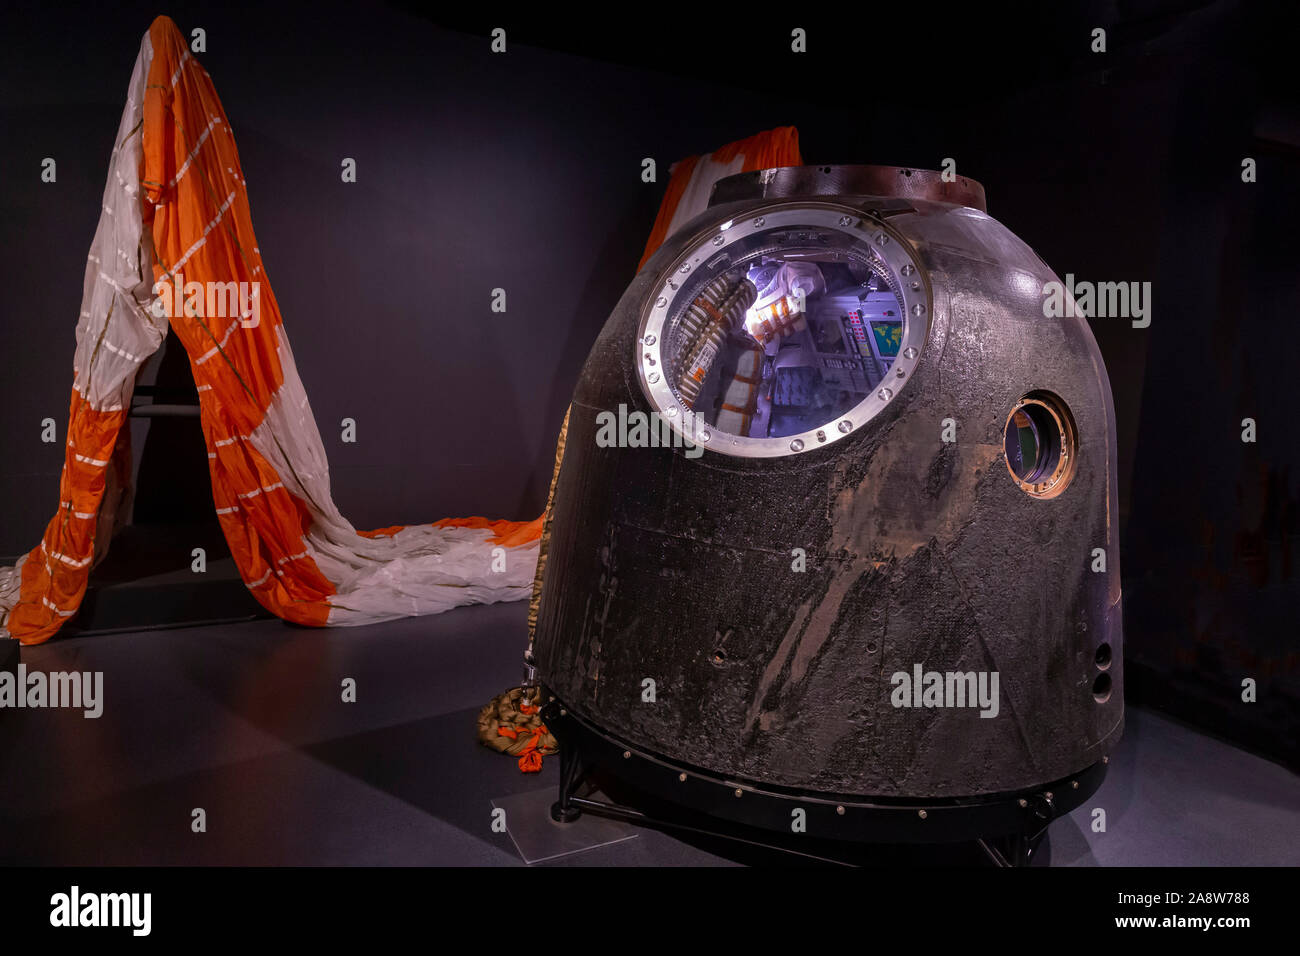 La cápsula espacial Soyuz en la que el astronauta británico Tim Peake viajó a la Estación Espacial Internacional Foto de stock